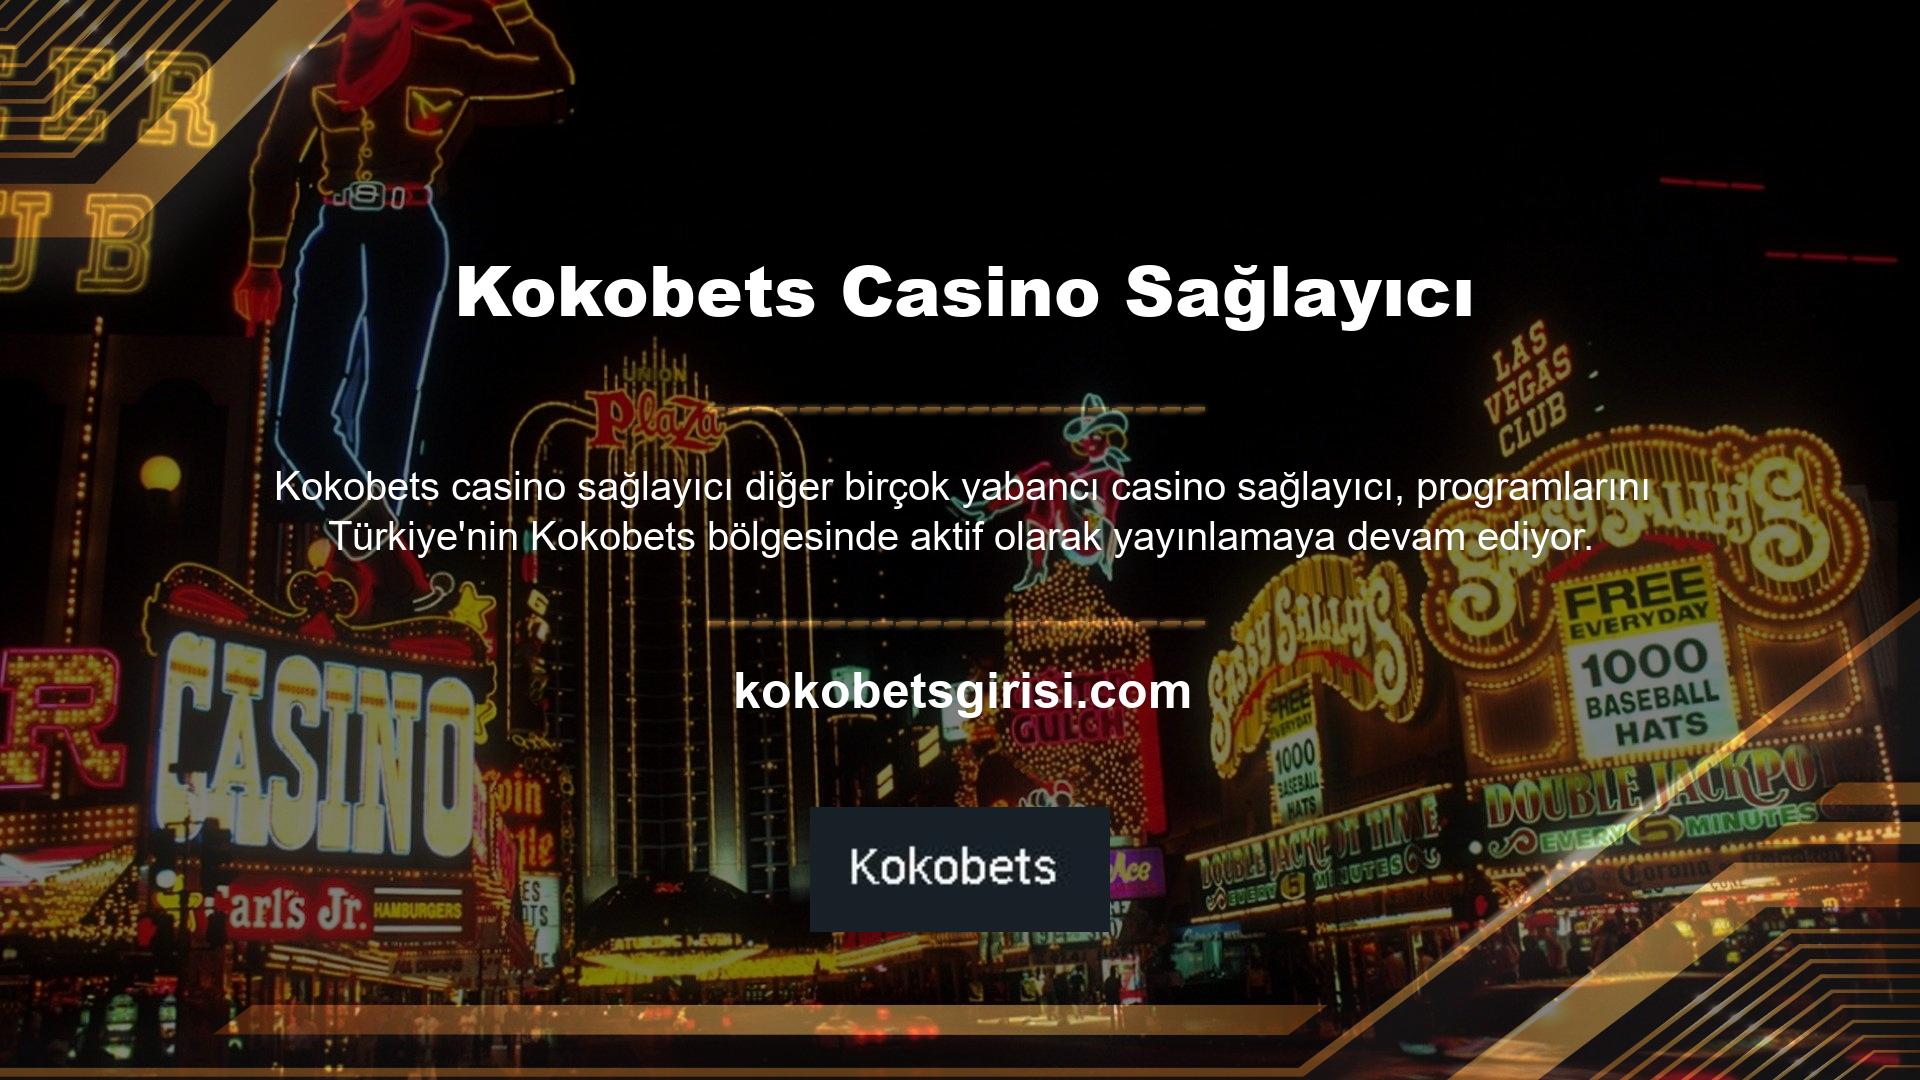 Kokobets bu anlamda ülkemizde Türk alternatifleri sunan başarılı ve güvenilir casino sağlayıcılardan biridir